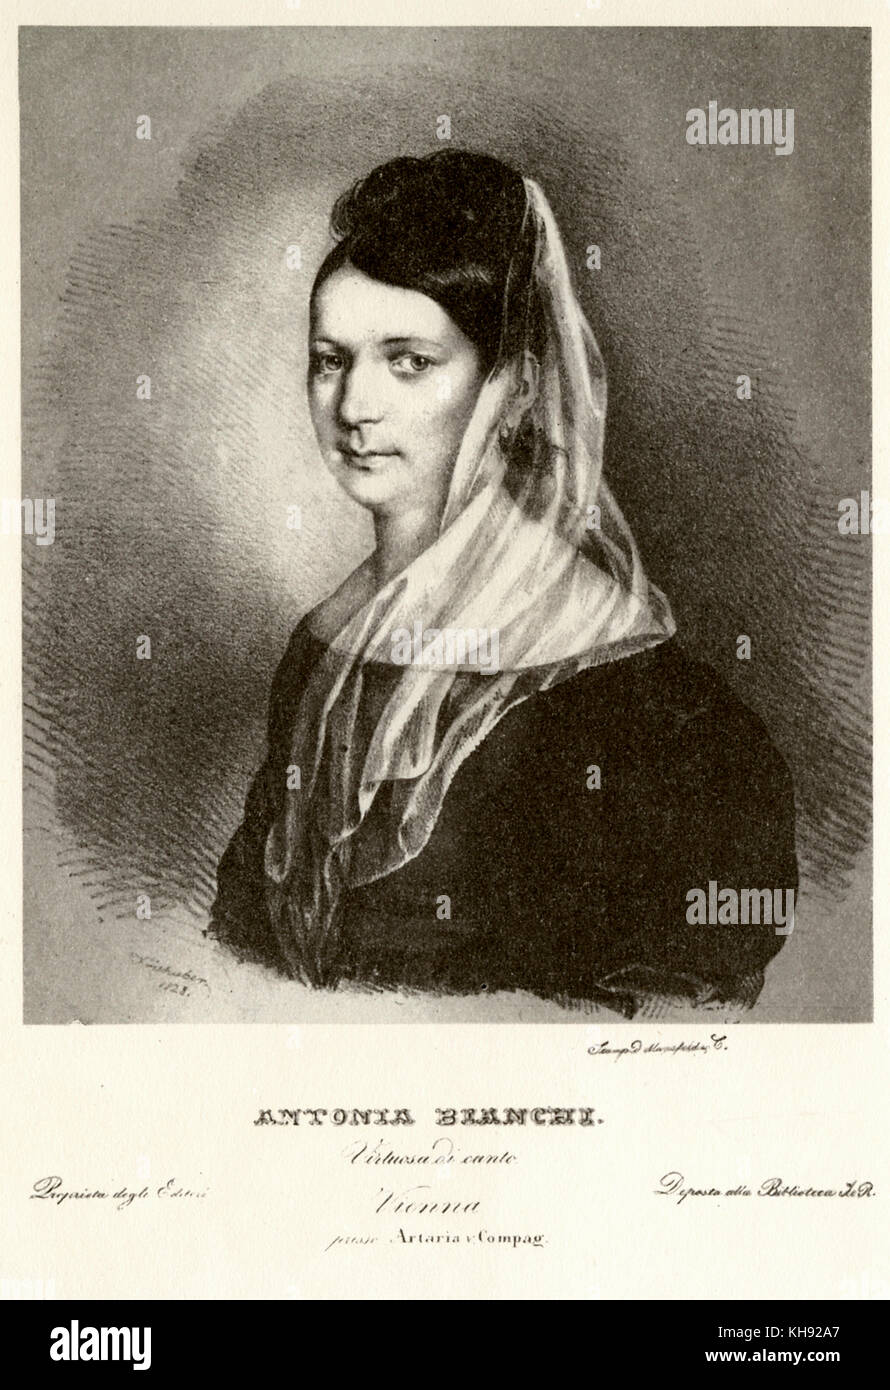 Antonia Bianchi - dalla litografia di Joseph Kriehuber, 1828. Cantante italiana, eseguita in concerto con Chopin e flautista Kresner presso il Conservatorio di Varsavia. Foto Stock